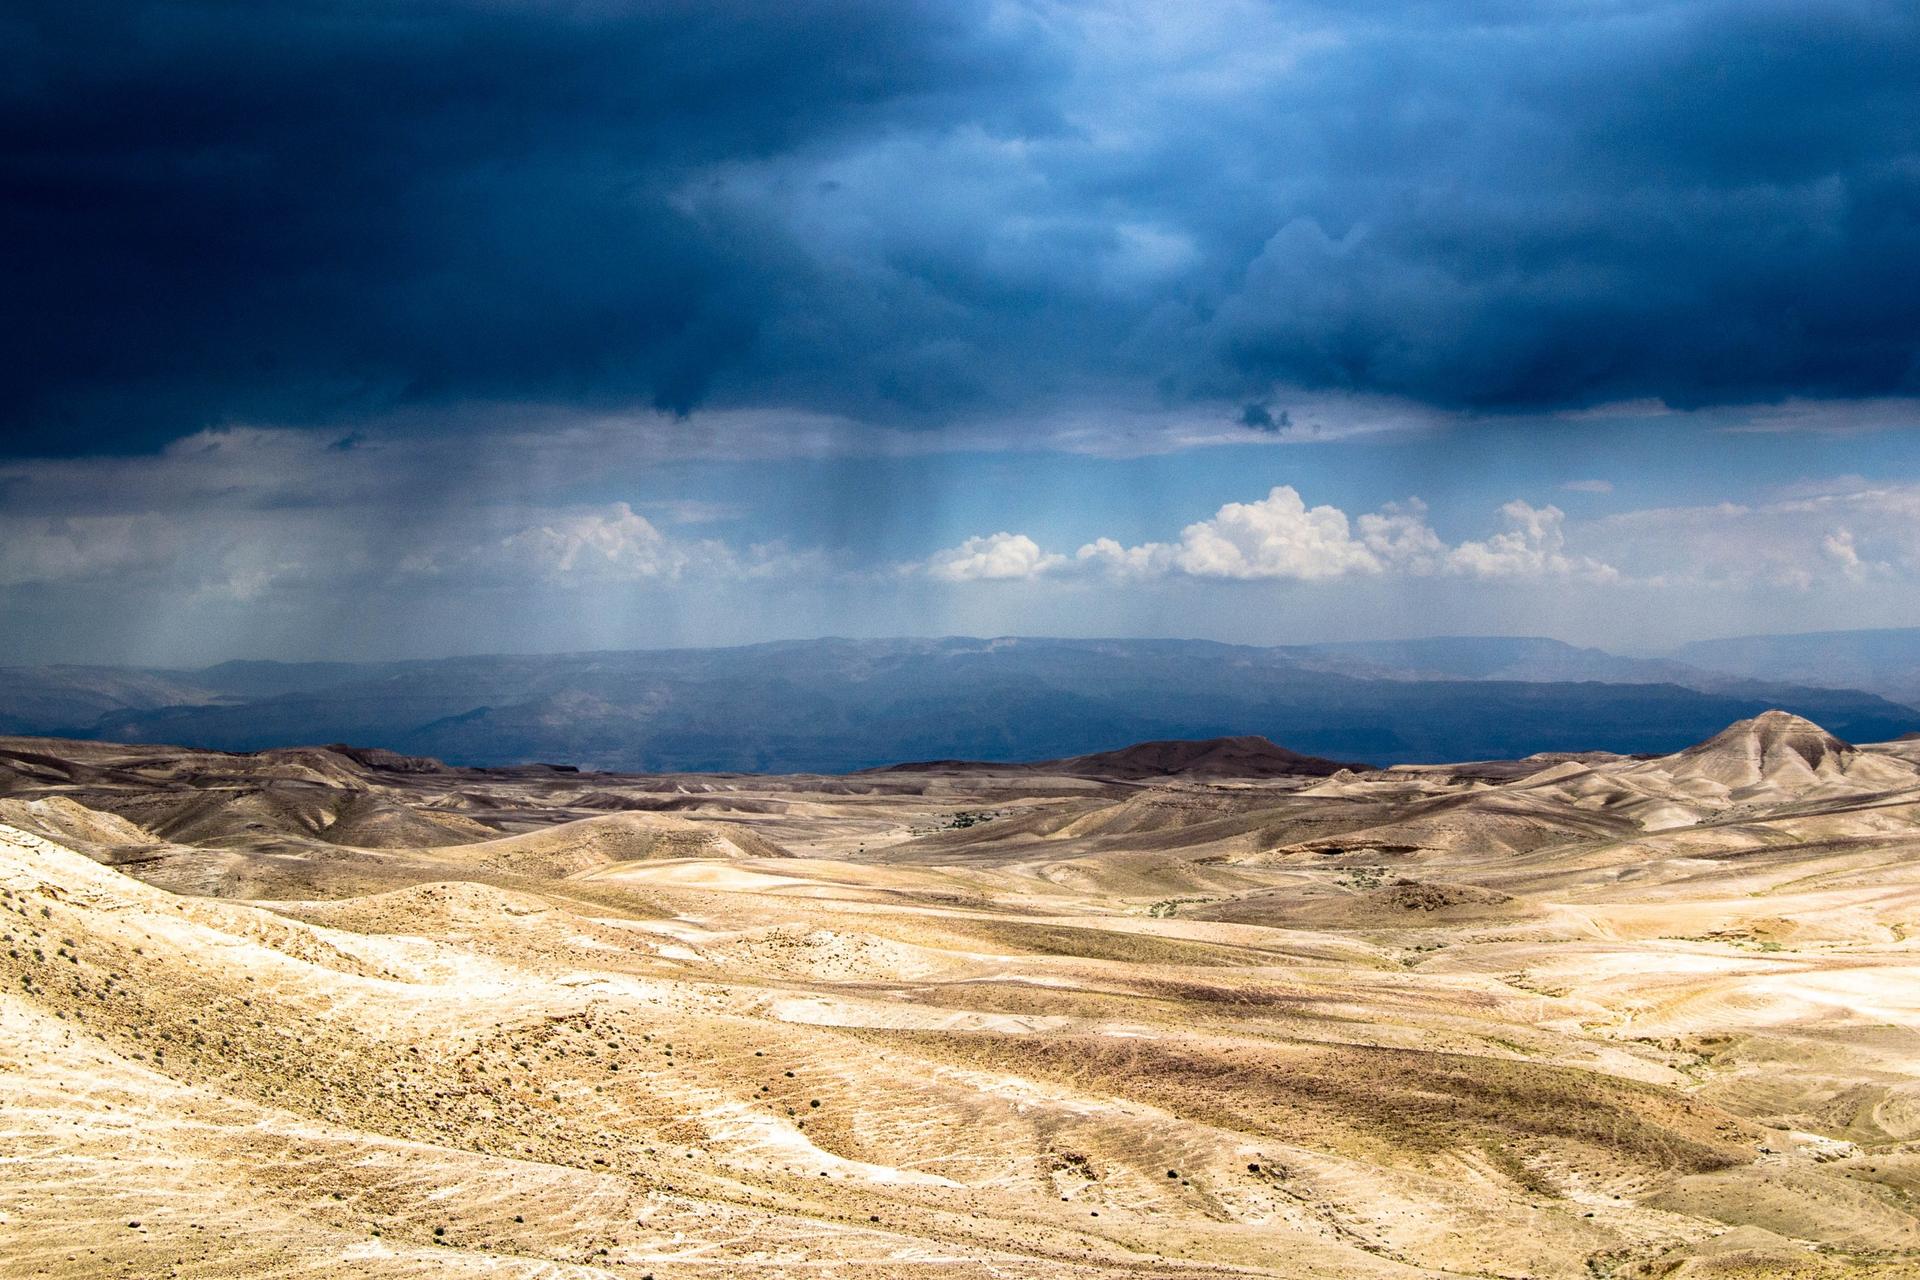 Viaje imaginario en el desierto de Judá: buscando un oasis de paz en tiempos de incertidumbre